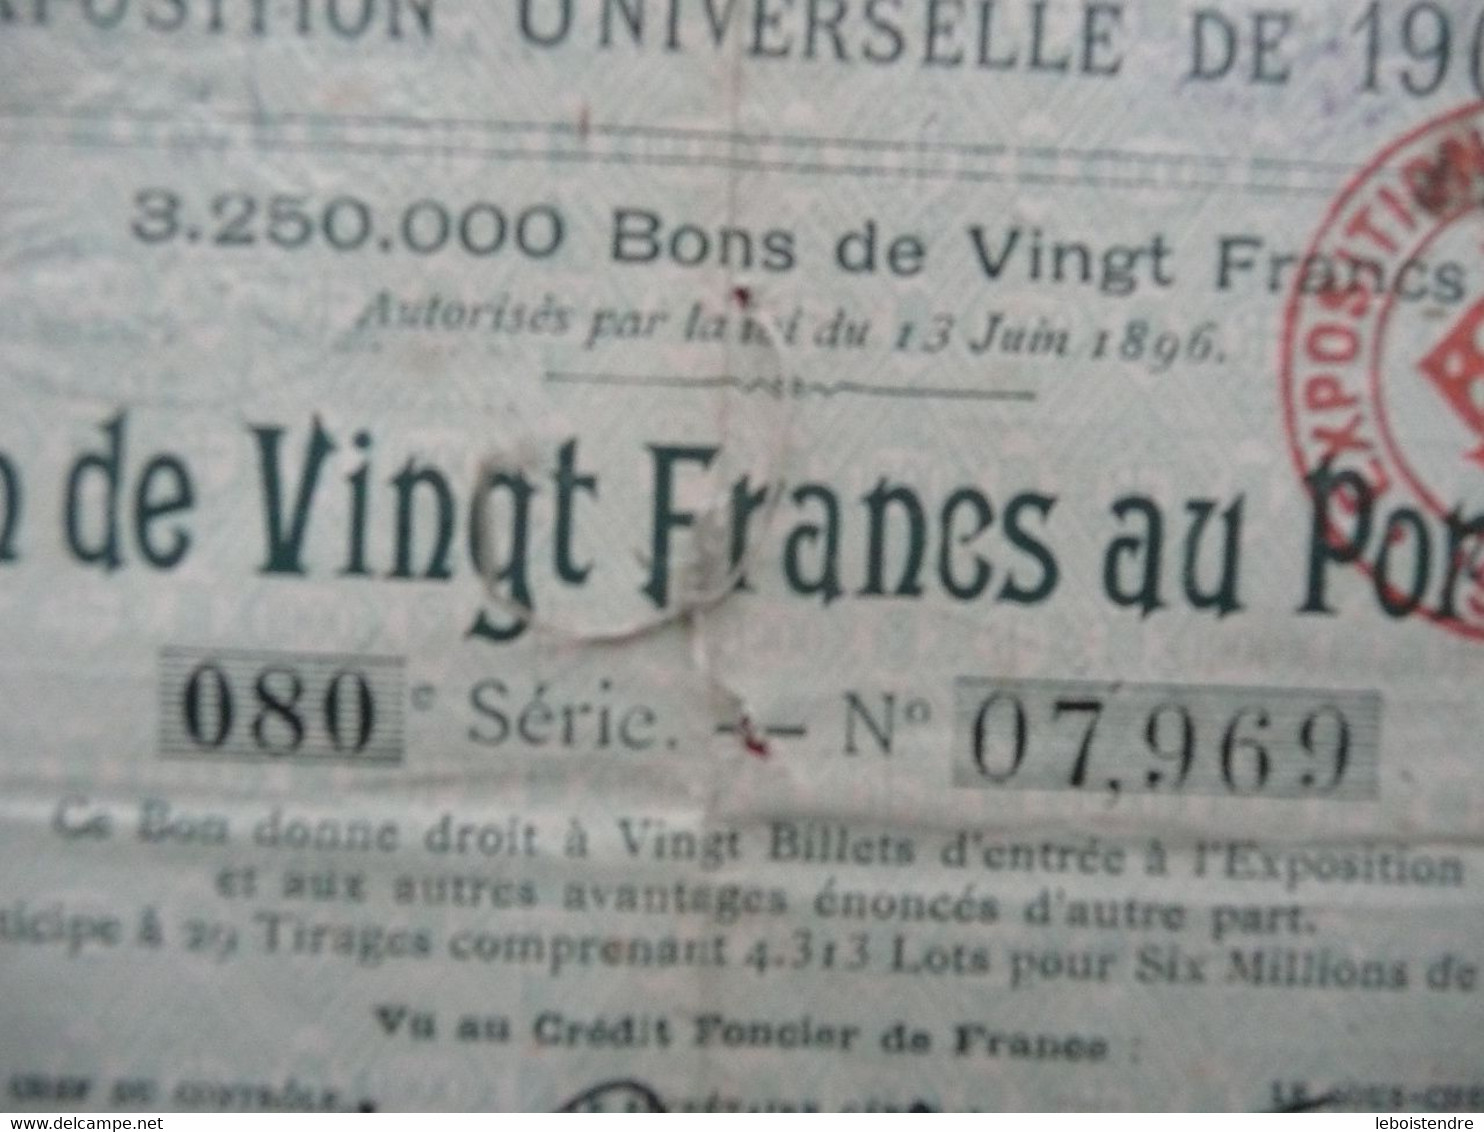 EXPOSITION UNIVERSELLE DE 1900 BON DE VINGT FRANCS AU PORTEUR 080 é SERIE N° 07,969 - D - F